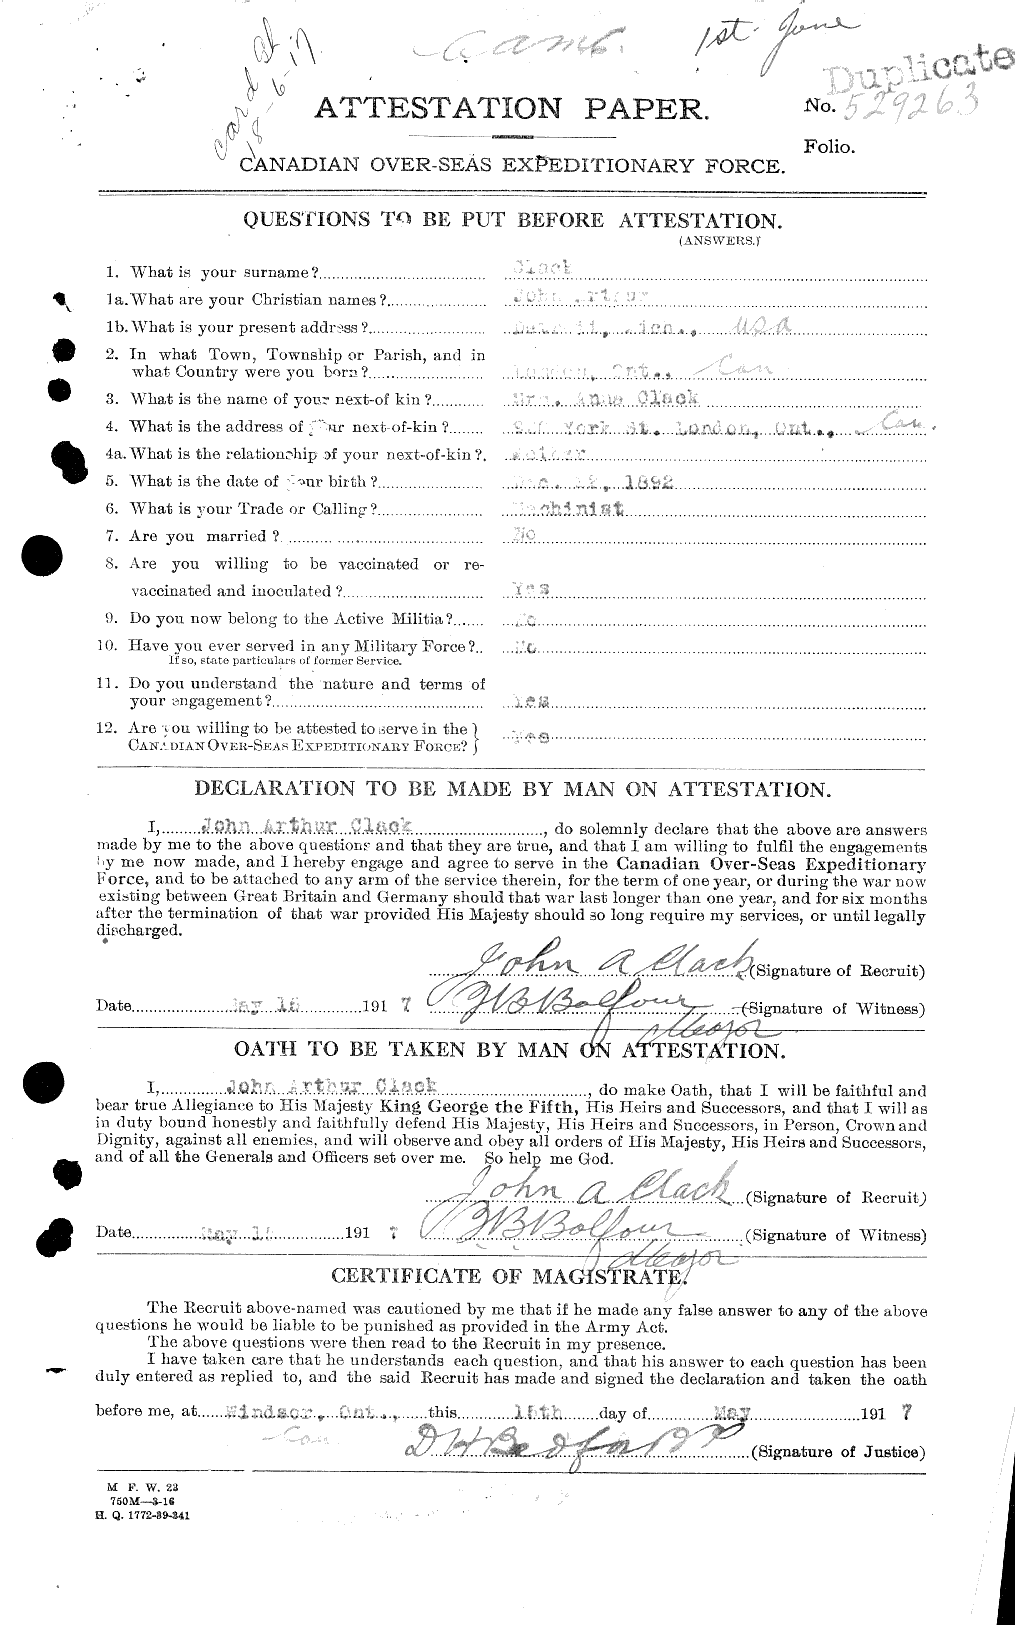 Dossiers du Personnel de la Première Guerre mondiale - CEC 024561a